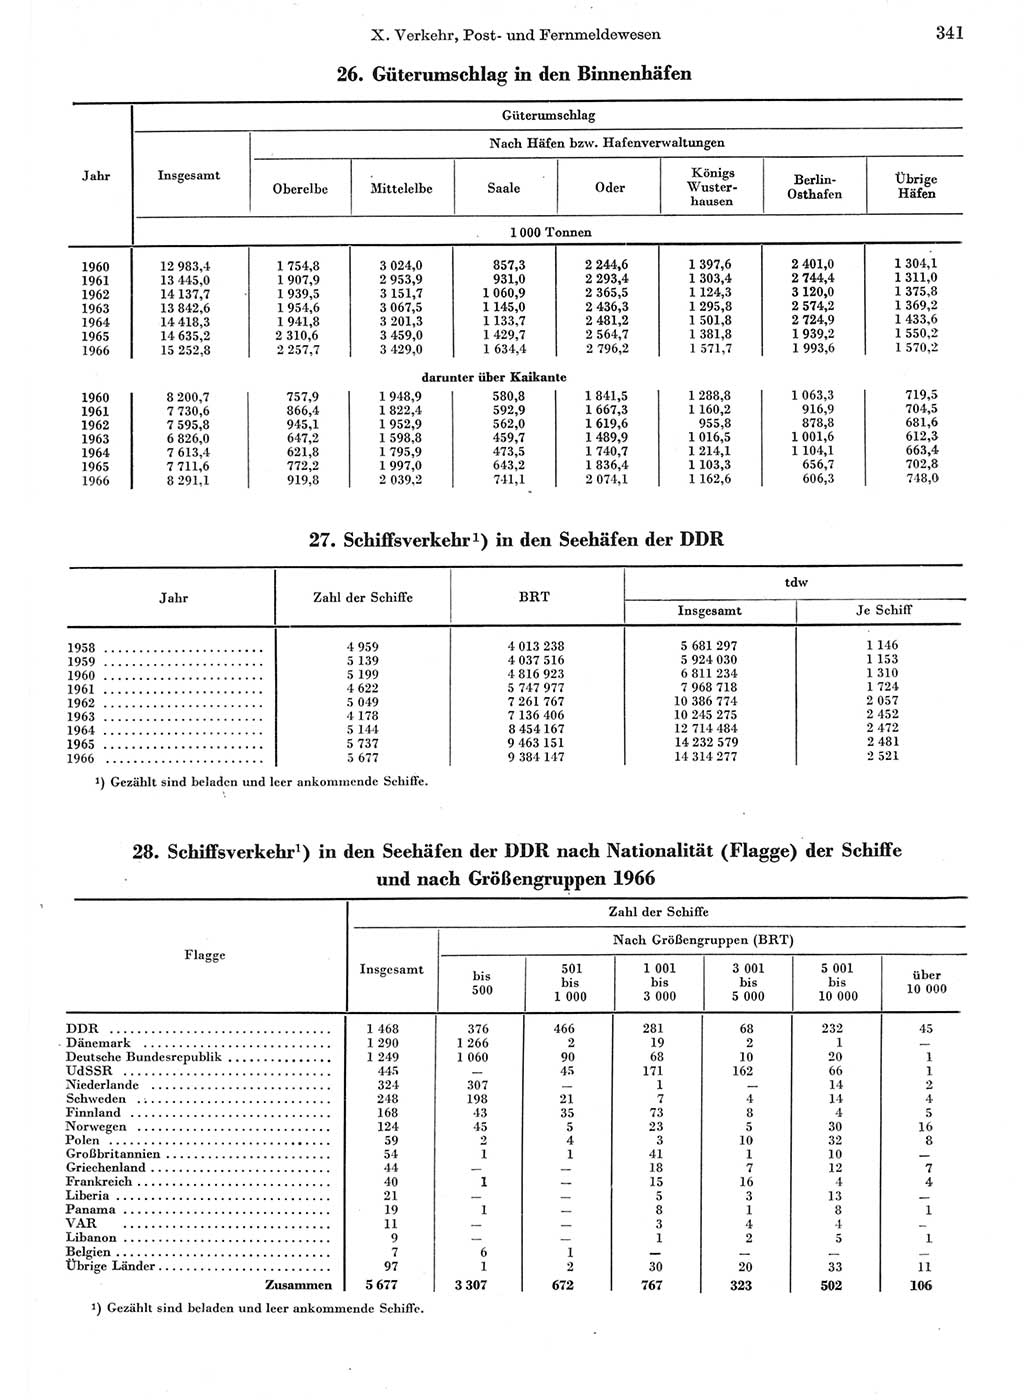 Statistisches Jahrbuch der Deutschen Demokratischen Republik (DDR) 1967, Seite 341 (Stat. Jb. DDR 1967, S. 341)